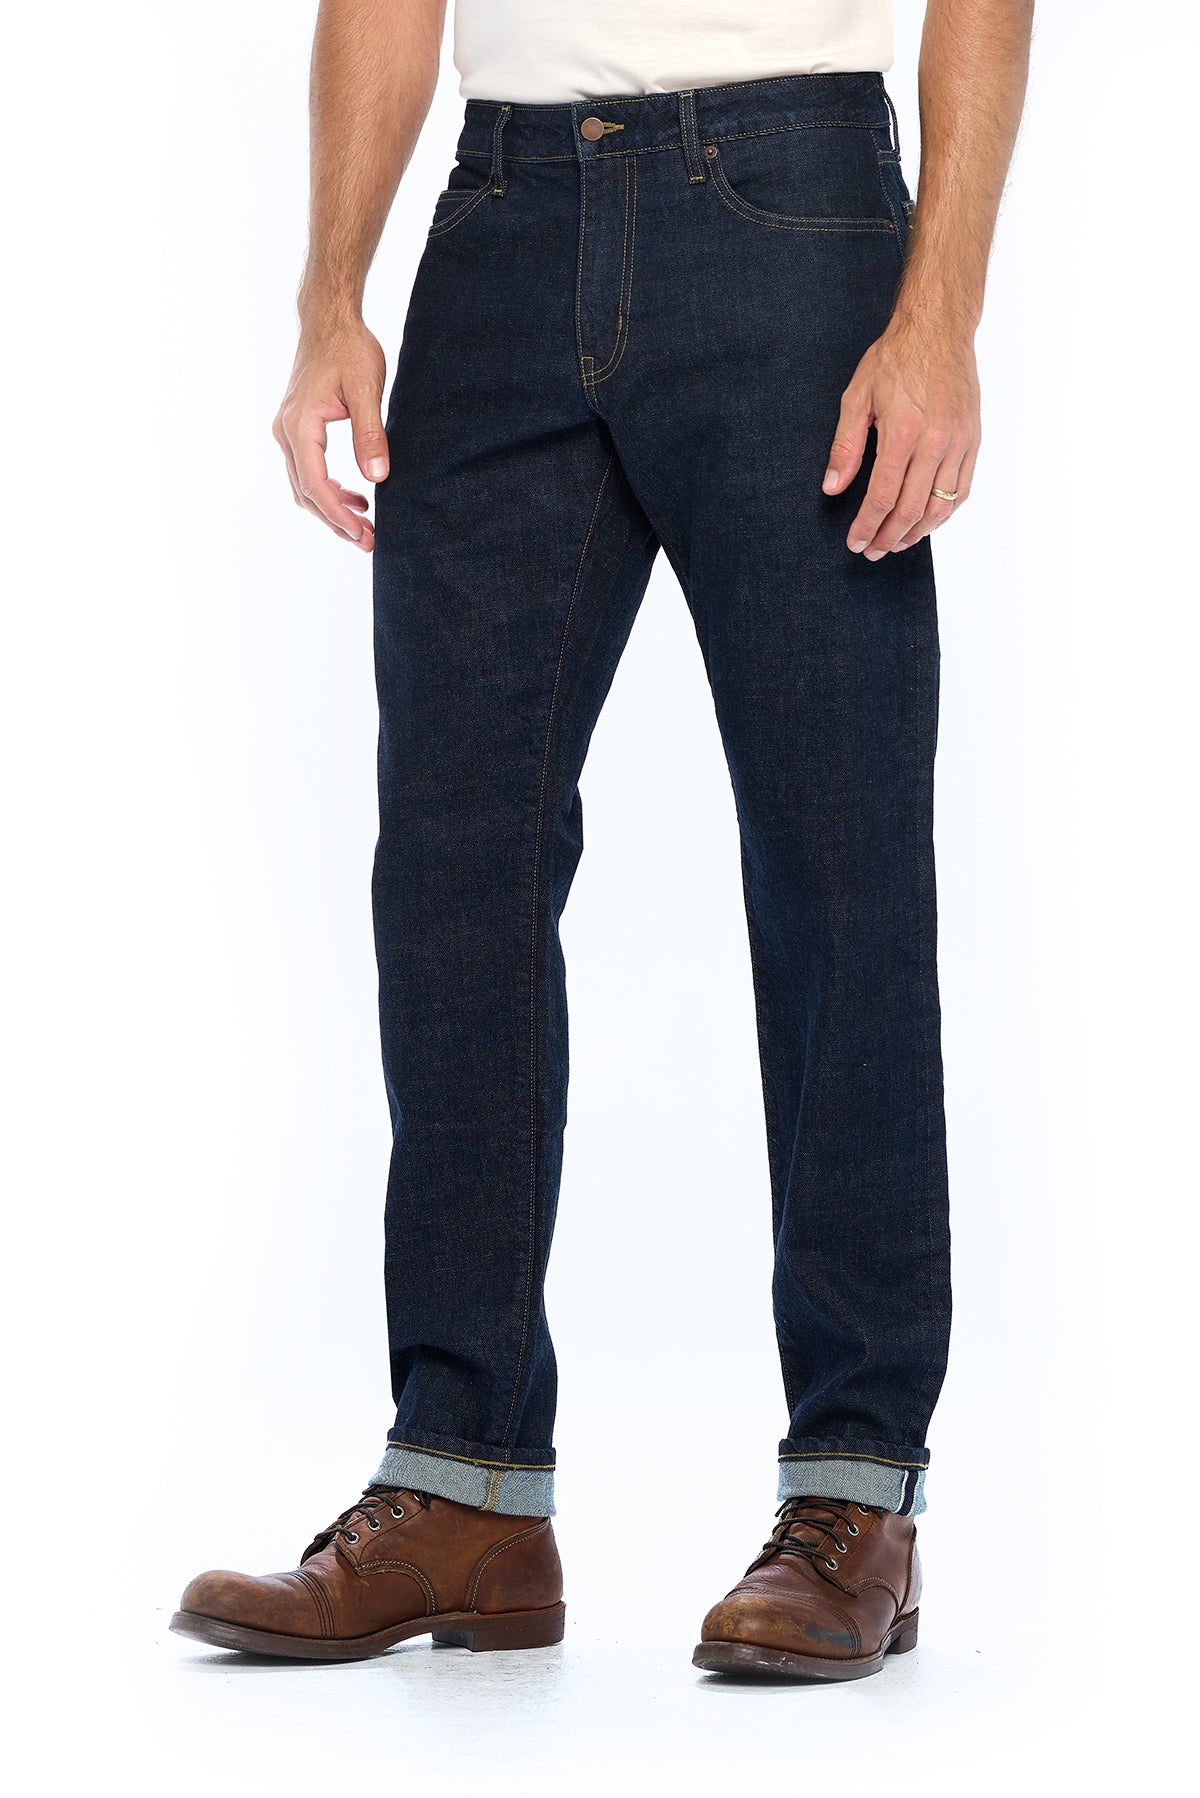 The Best Travel Jeans for Men, Selvedge Dark Indigo